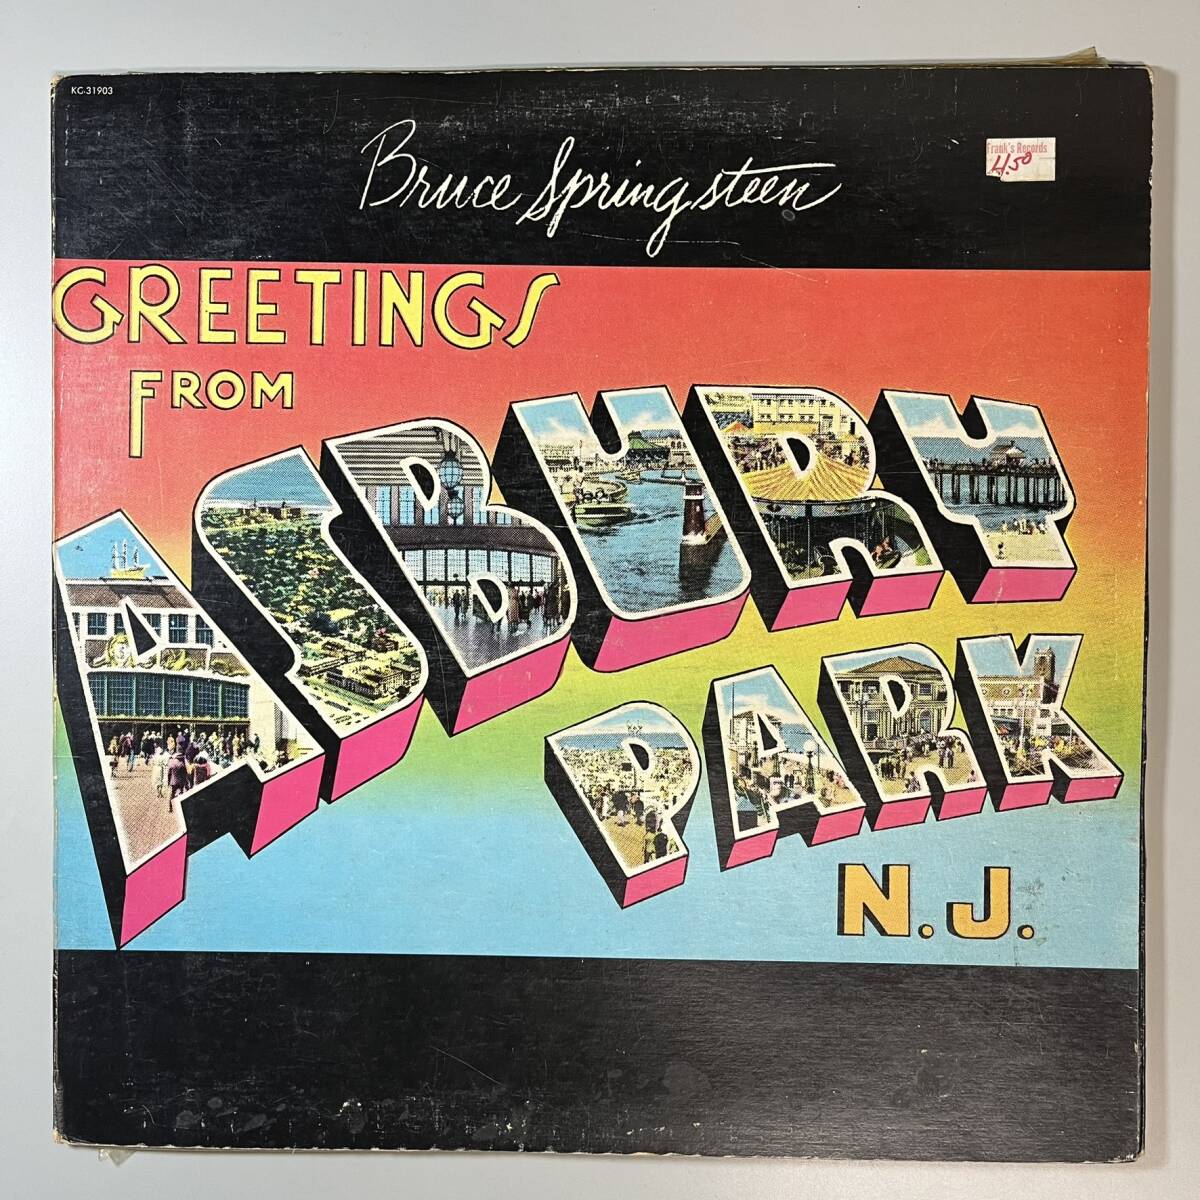 47213【カナダ盤】 BRUCE SPRINGSTEEN / GREETINGS FROM ASBURY PARK, N. J. _画像1